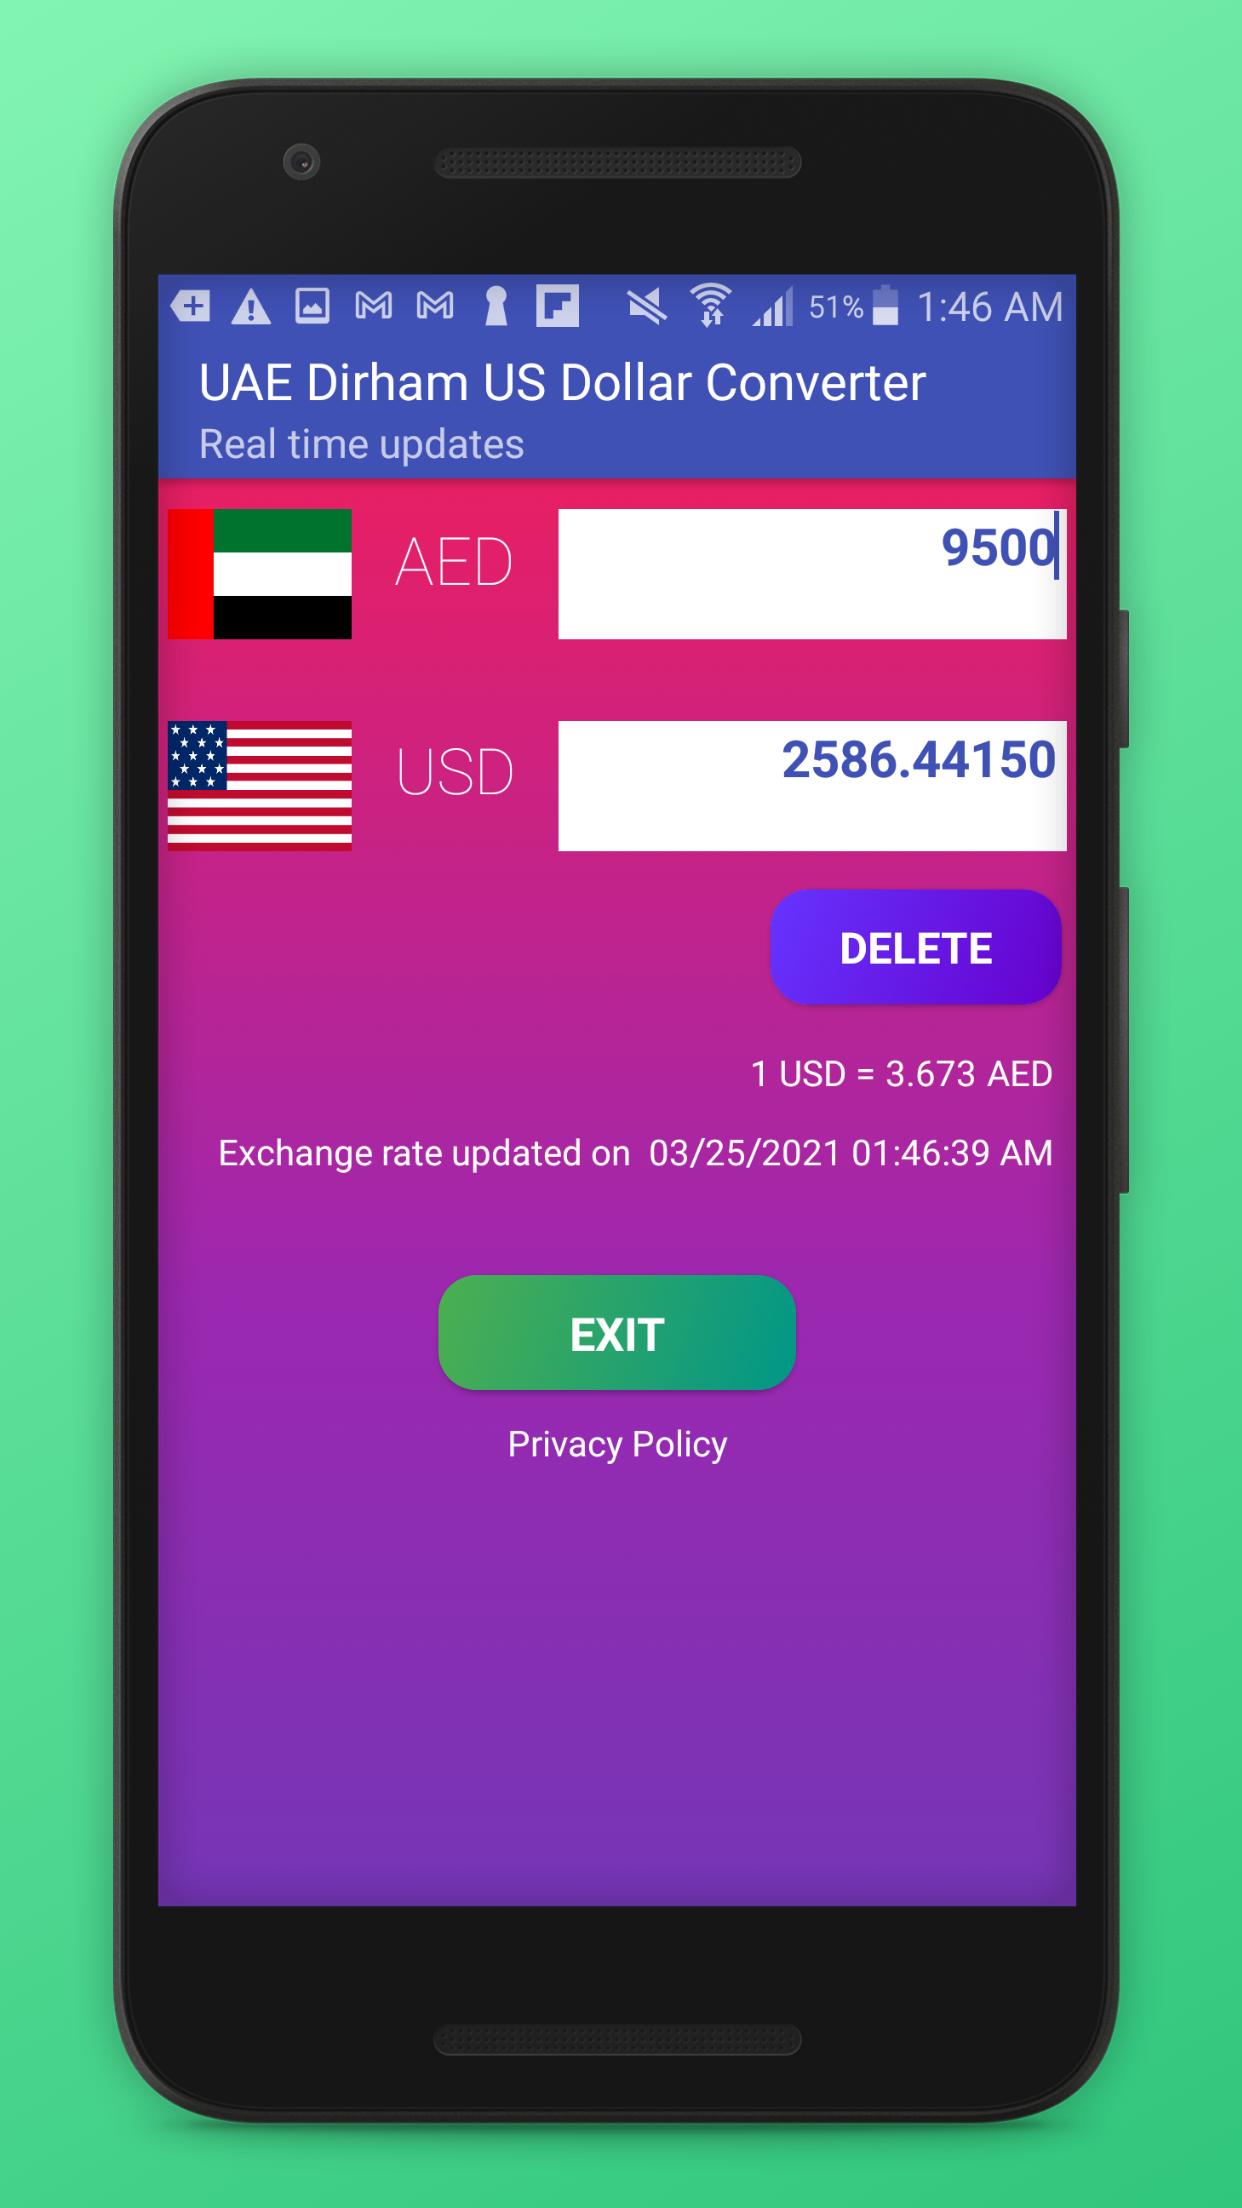 UAE Dirham US Dollar Converter - AED & USD APK pour Android Télécharger